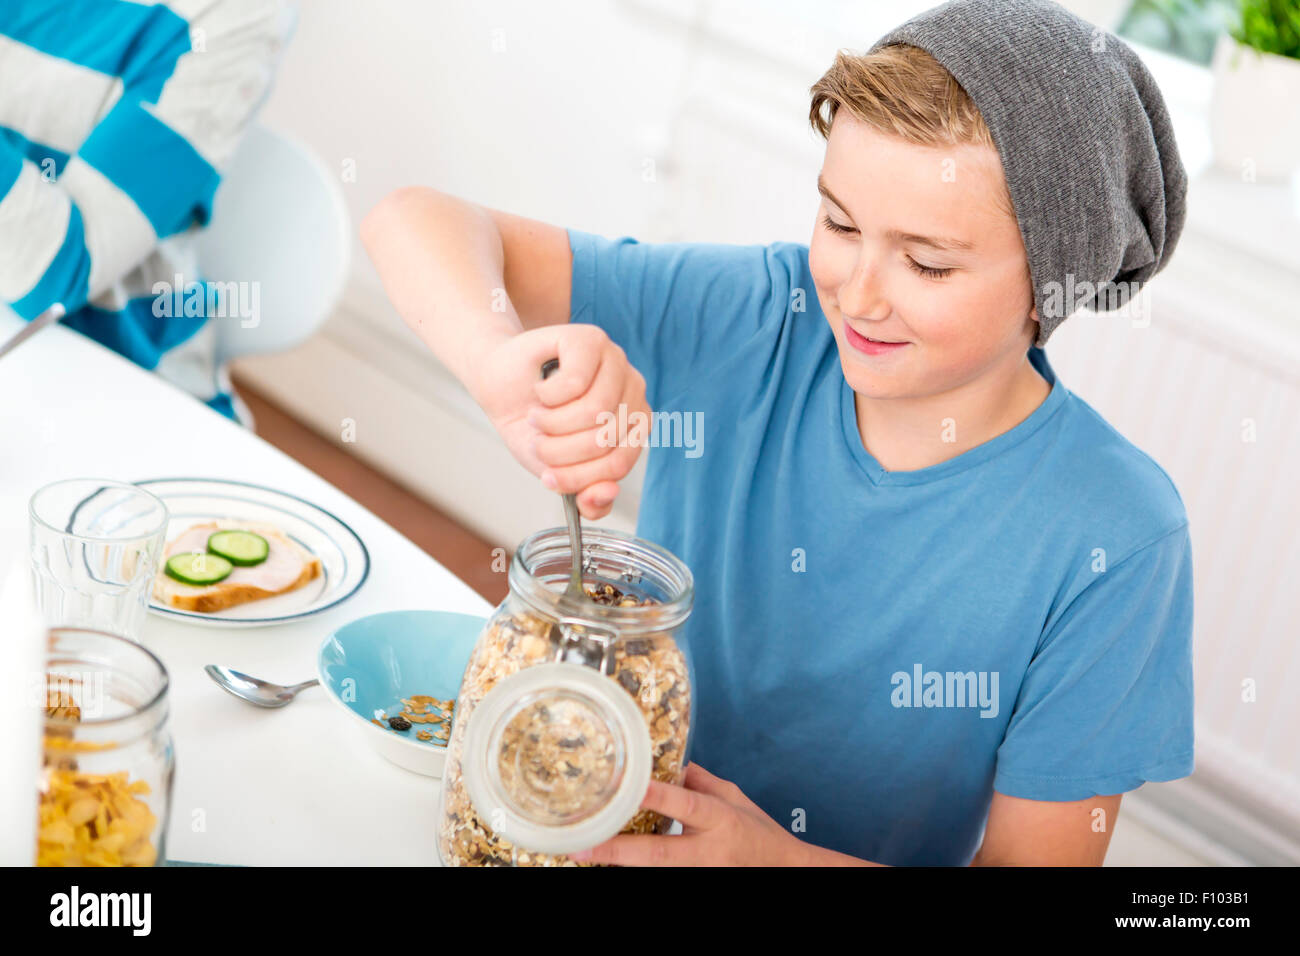 Adolescente servir cereales de una botella en la mesa del desayuno. Foto de stock